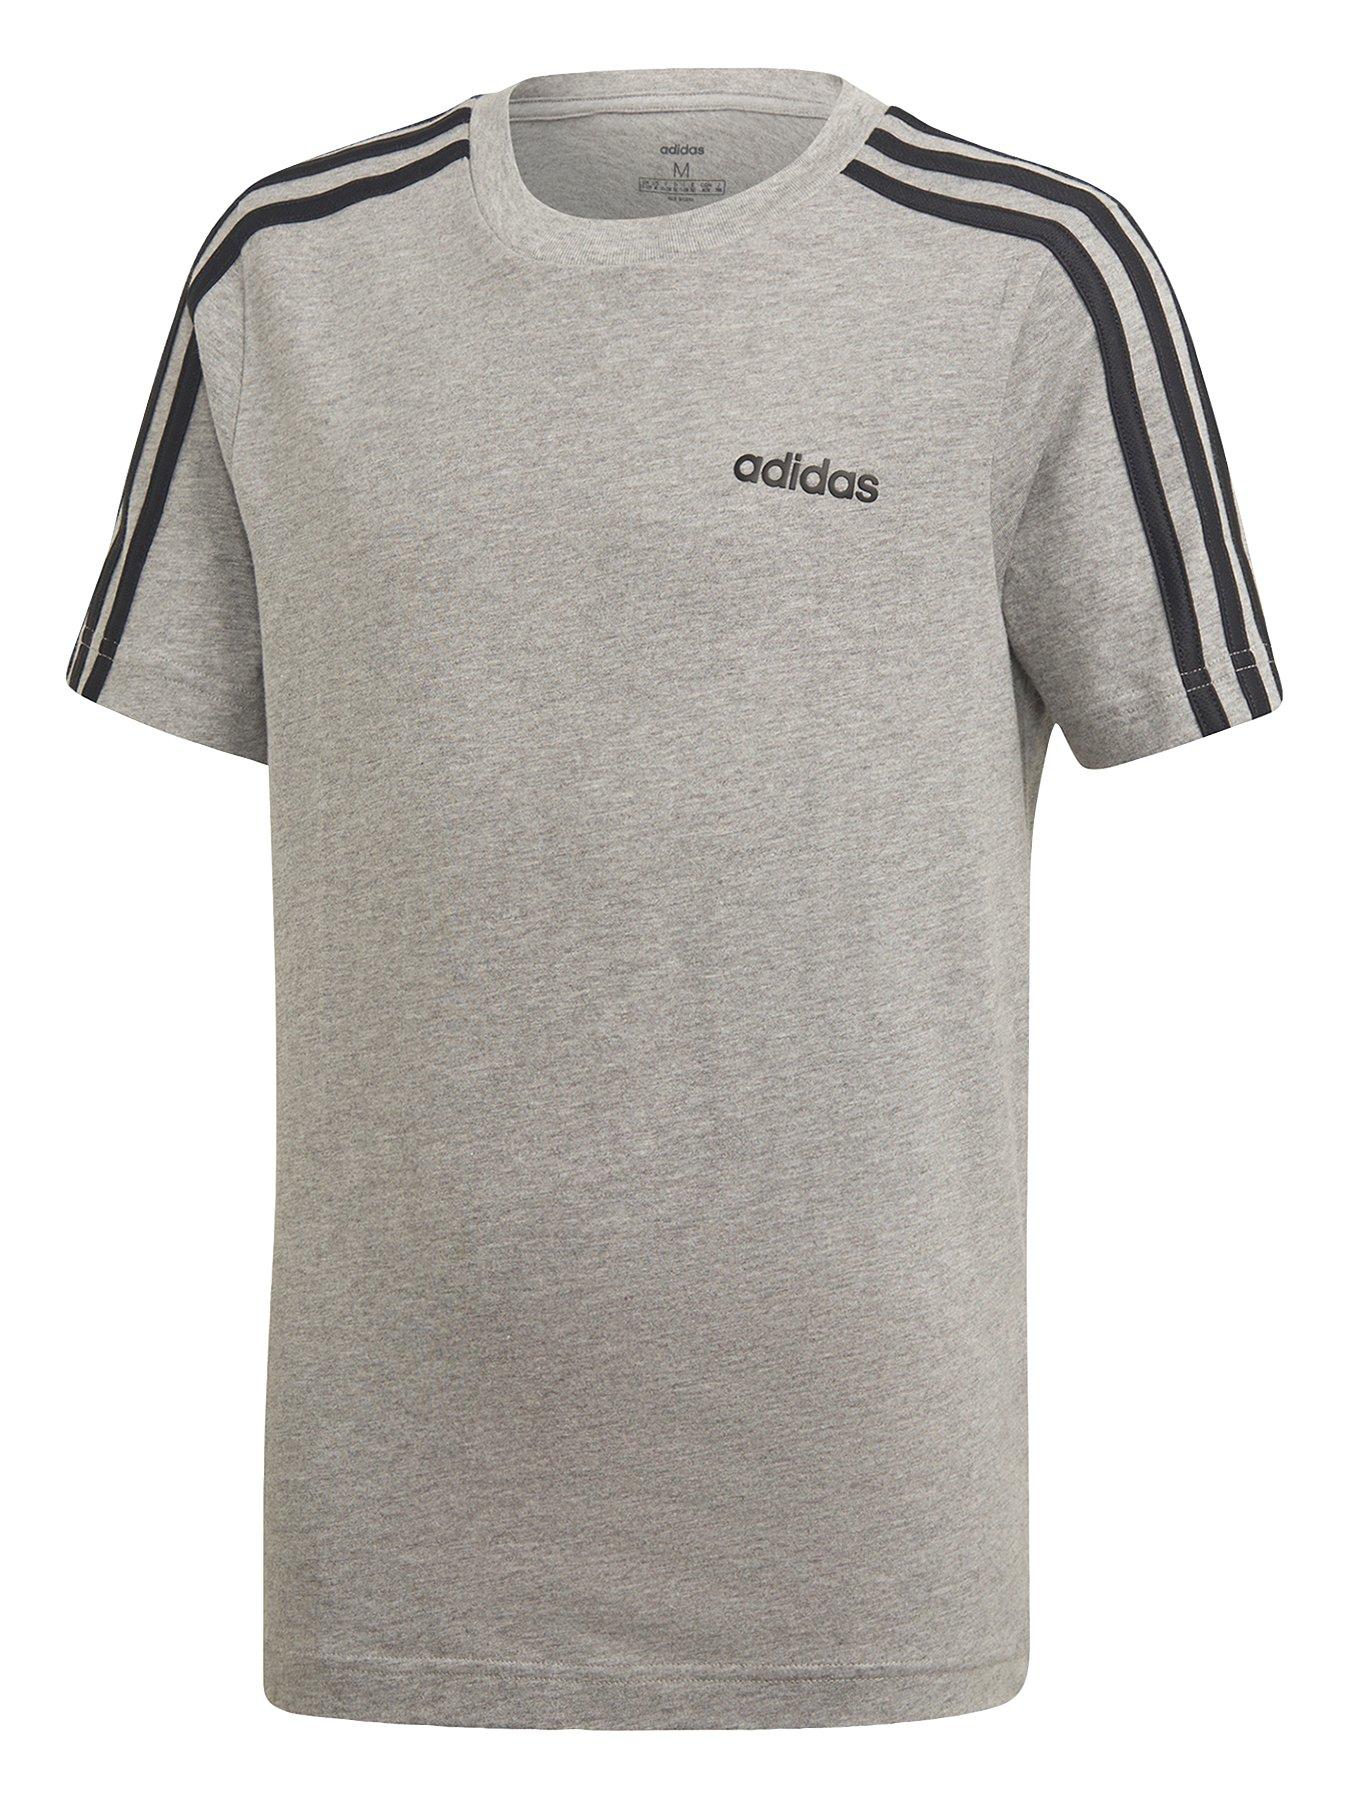 adidas 3 stripes t shirt grey